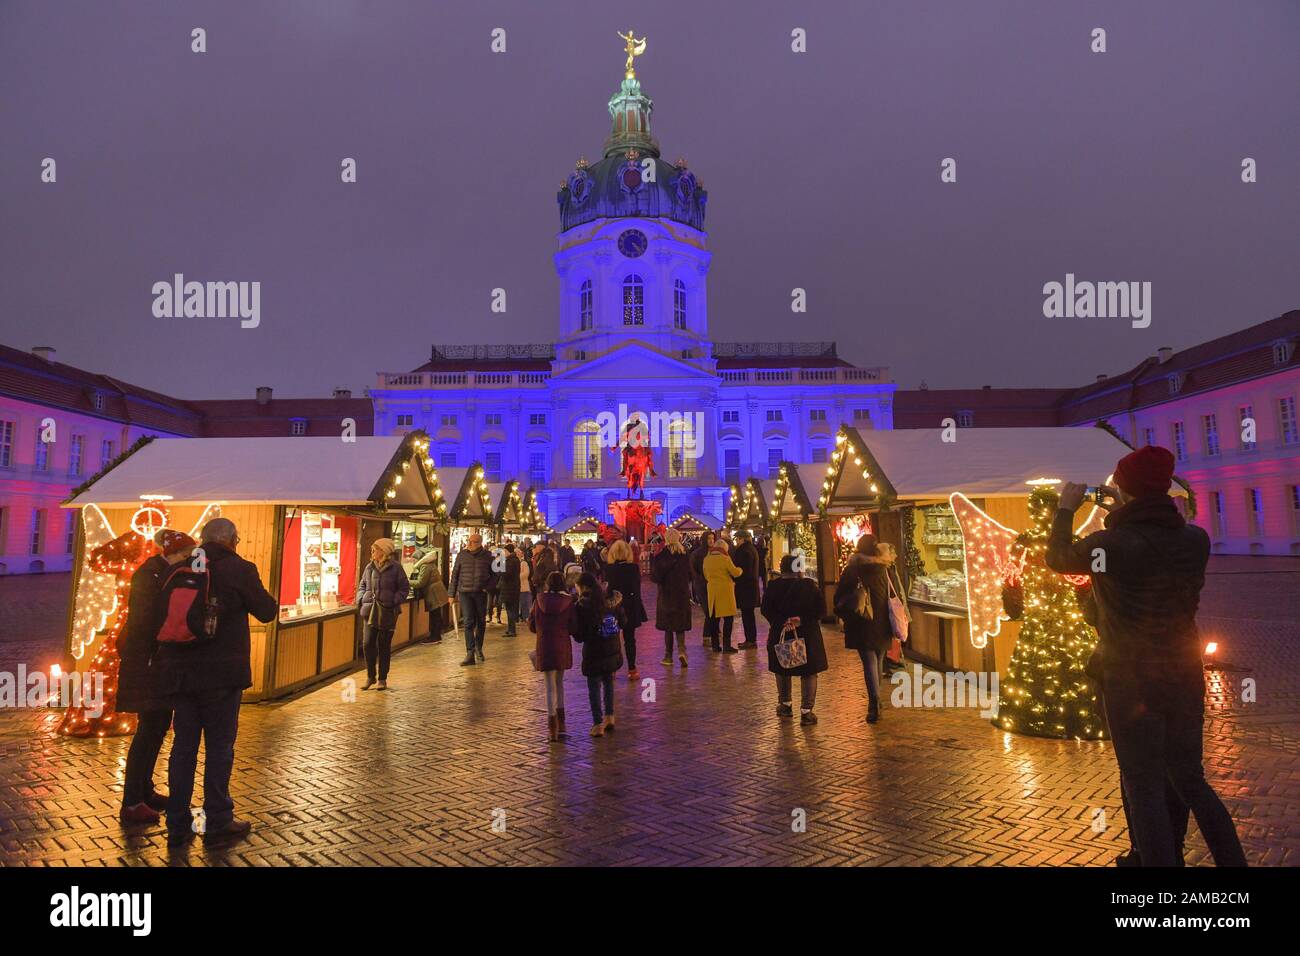 Weihnachtsmarkt am Schloß Charlottenburg, Berlin, Deutschland Stock Photo